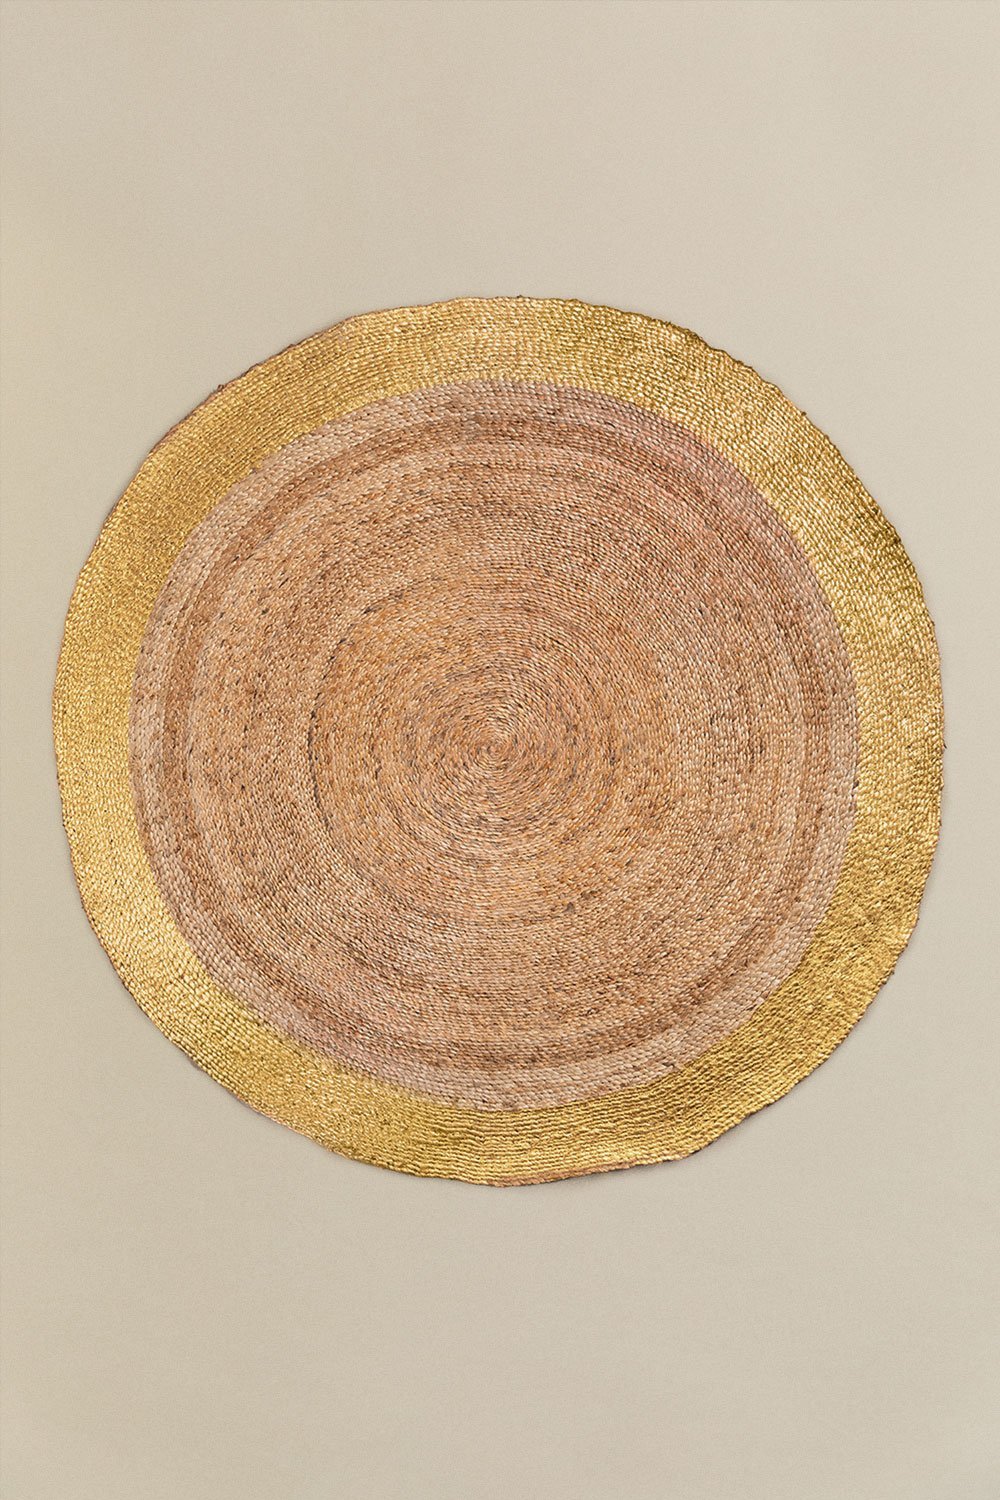 Tappeto in juta naturale Dagna (Ø153 cm) metallizzato, immagine della galleria 1